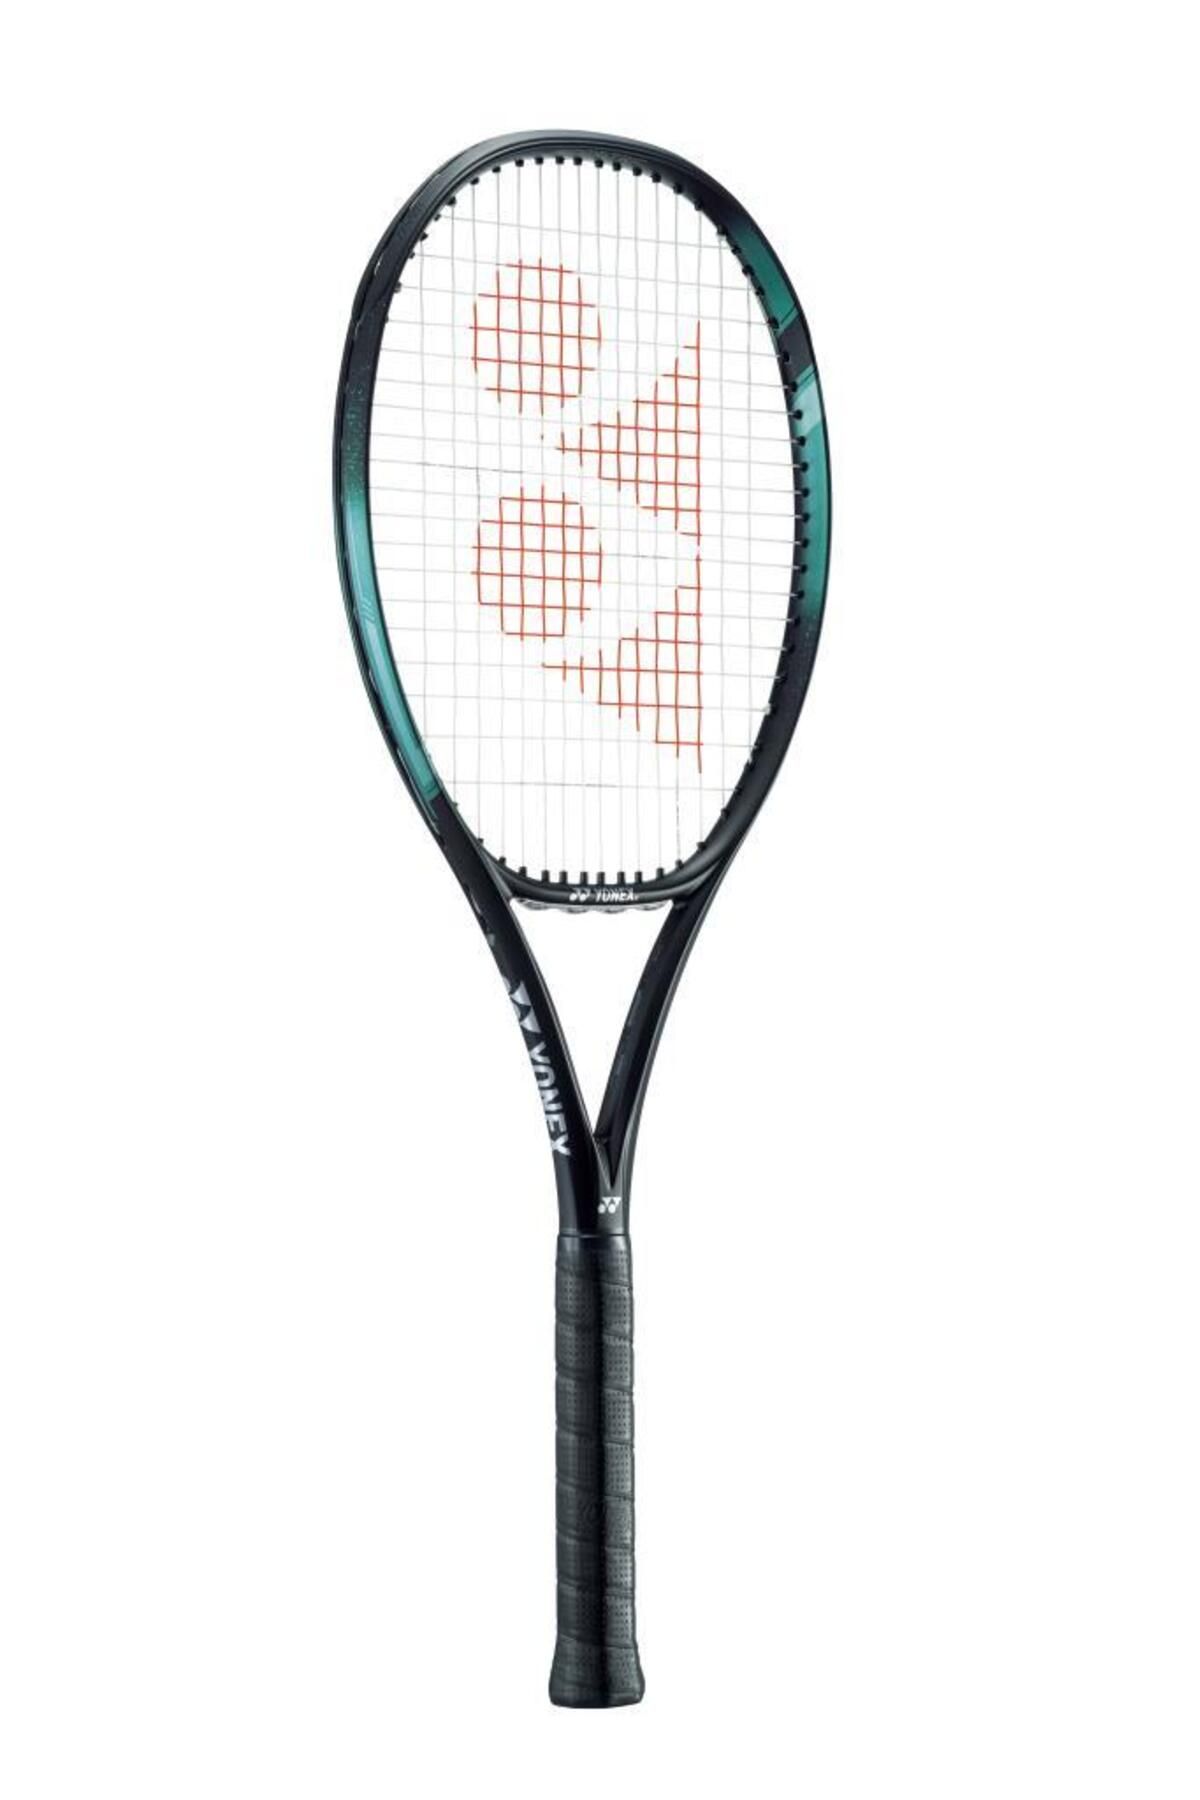 Yonex Ezone Aqua Siyah 98inch 305 Gr Tenis Raketi